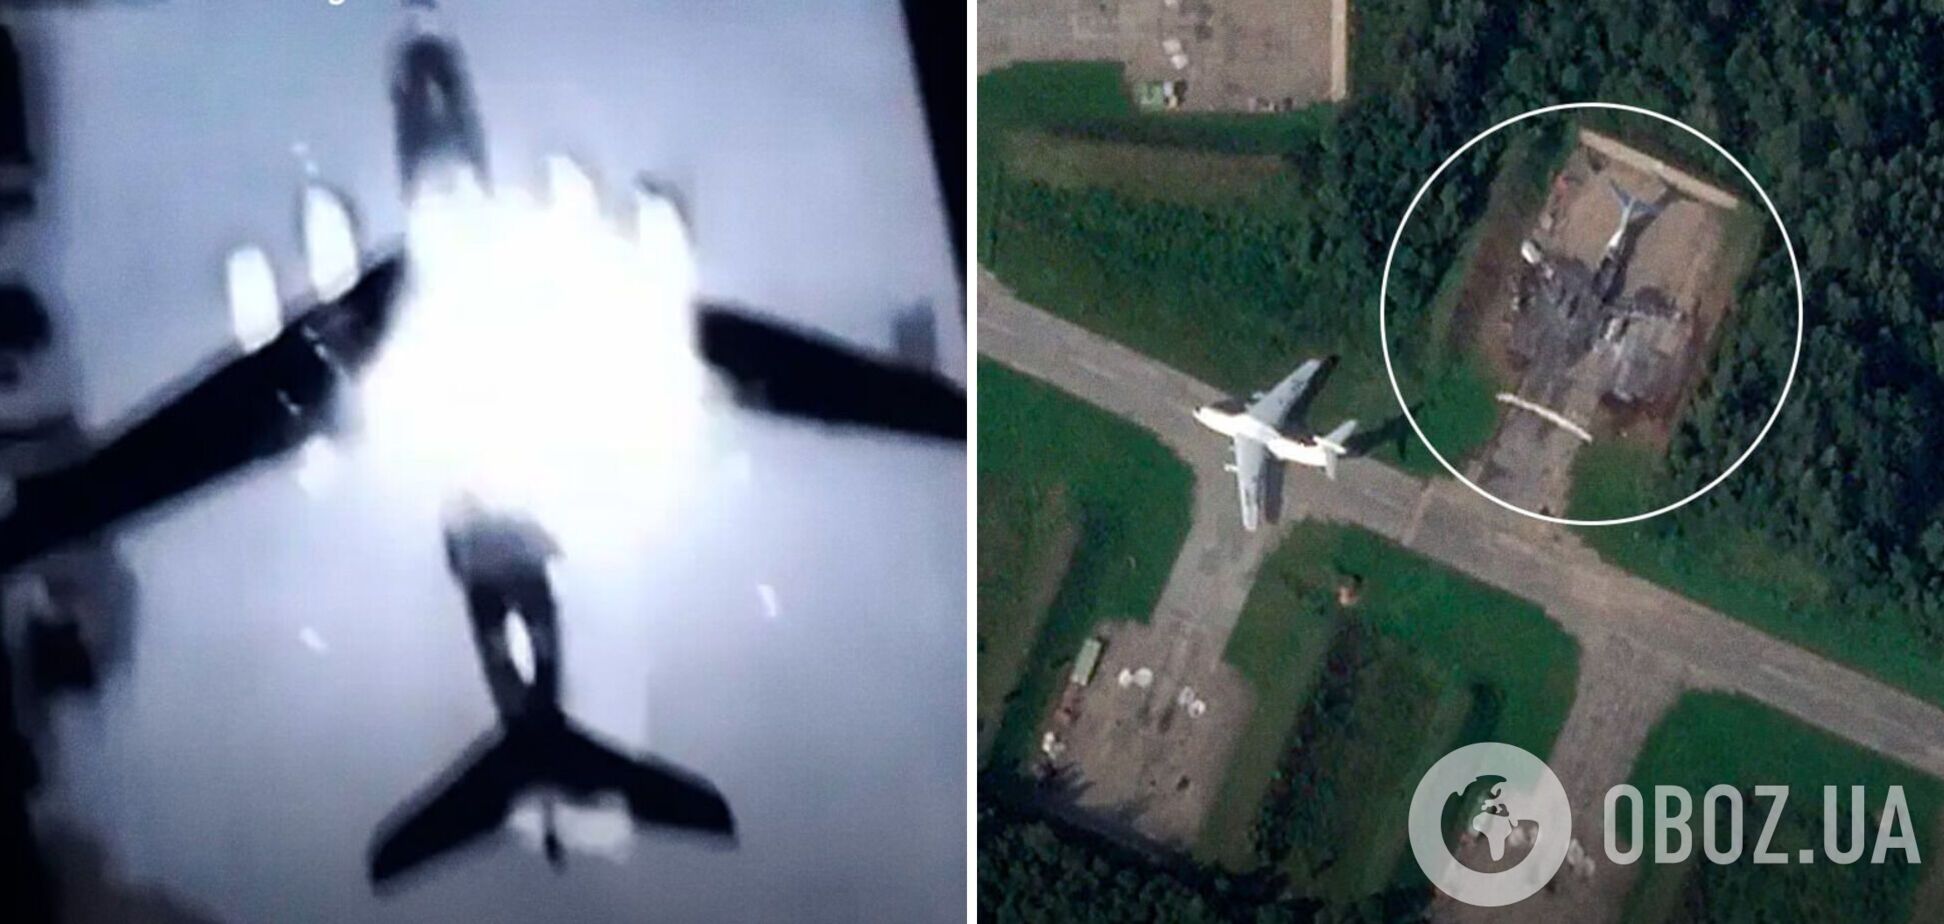 Дрони були націлені на паливні баки: з'явилися нові знімки знищених та пошкоджених літаків на аеродромі у Пскові 